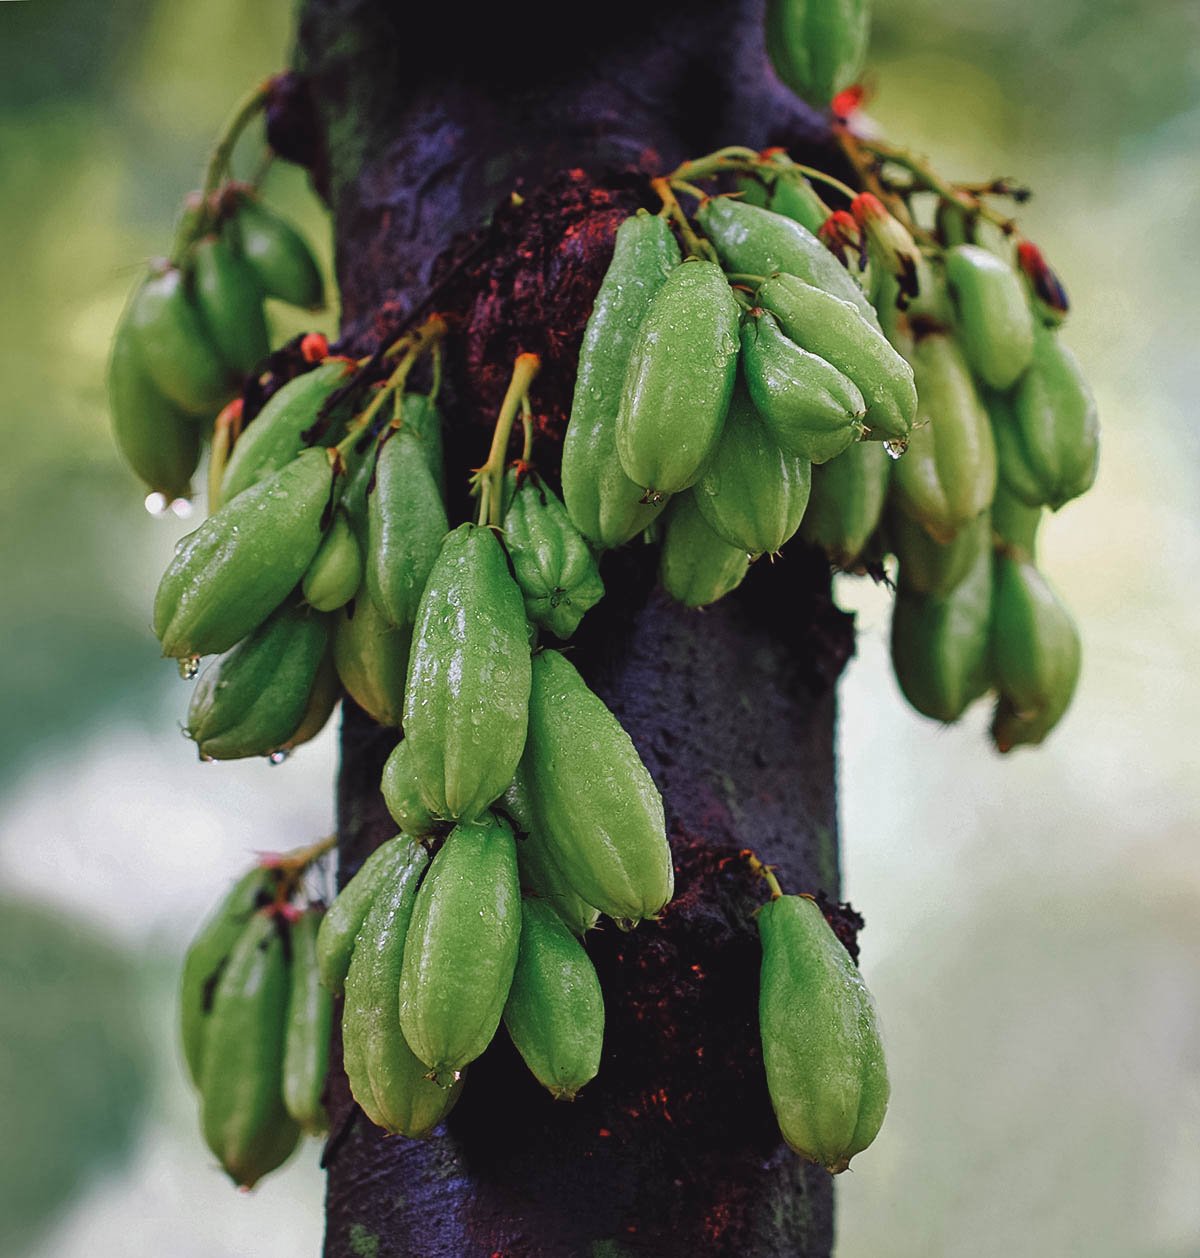 Bilimbi or kamias, a highly acidic fruit often eaten with rock salt